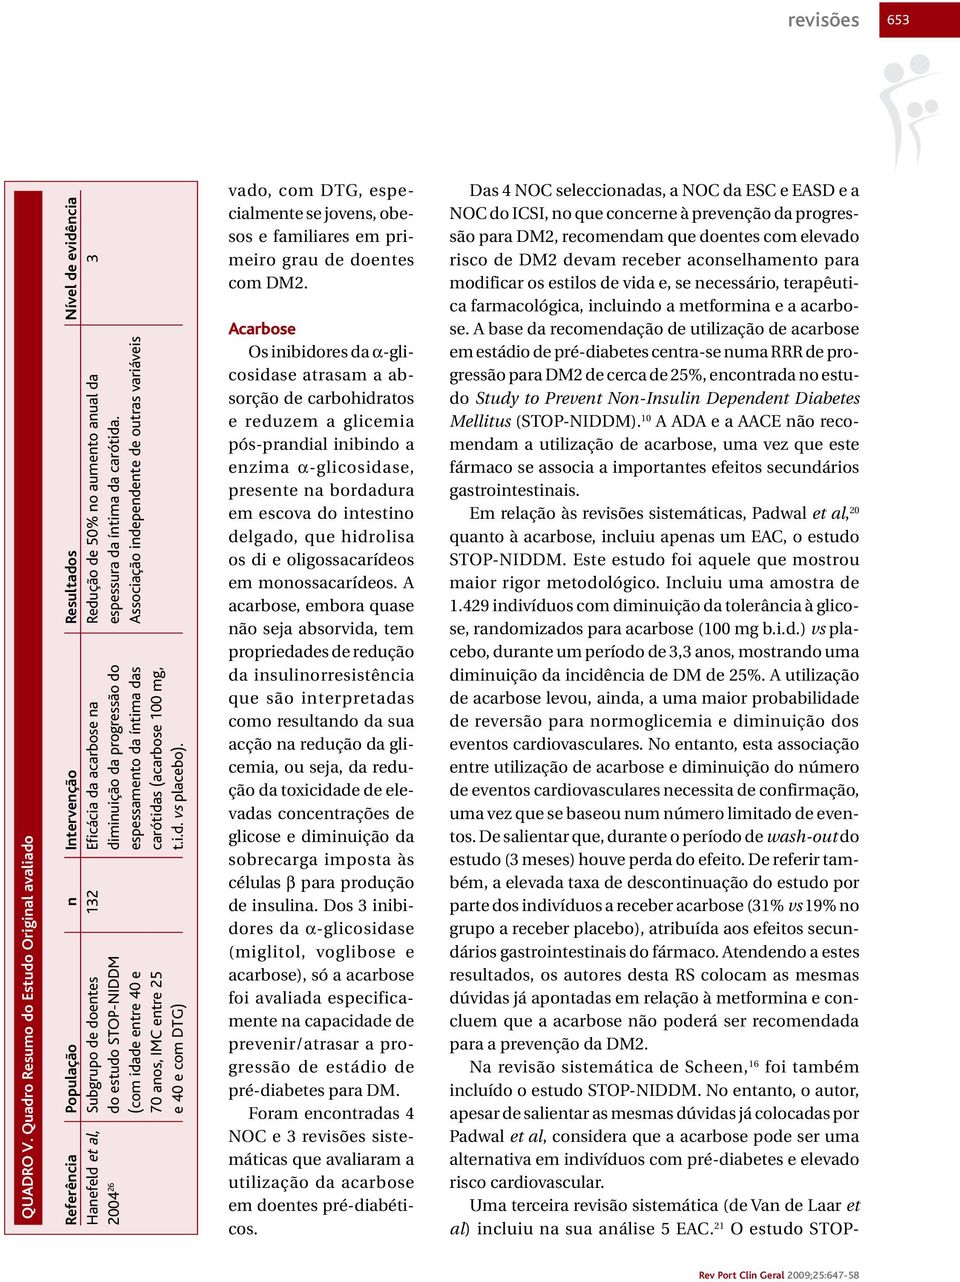 anual da 3 2004 26 do estudo STOP-NIDDM diminuição da progressão do espessura da íntima da carótida.